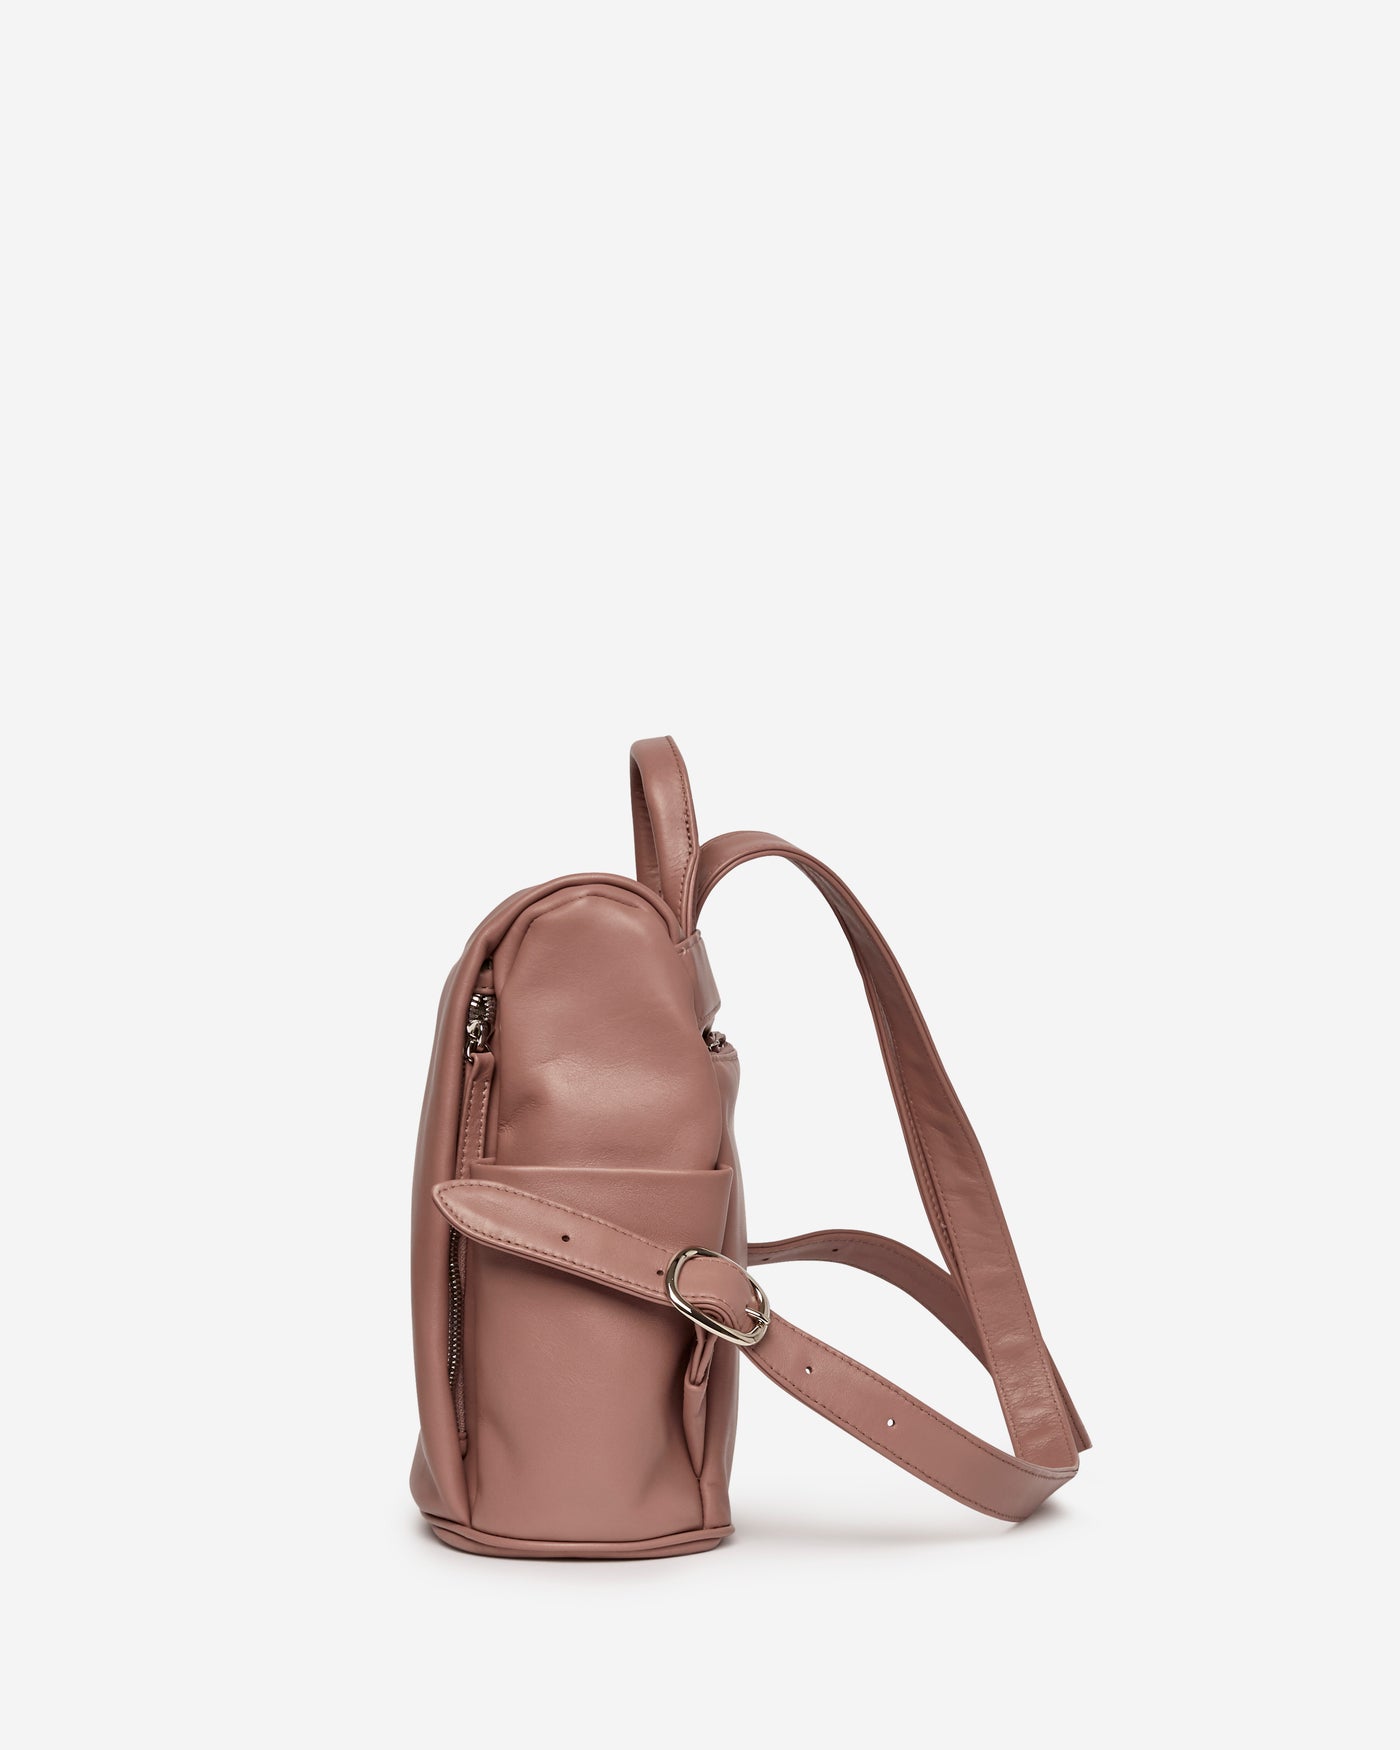 Mila Mini Backpack - Glicene Backpack Joey James, The Label   